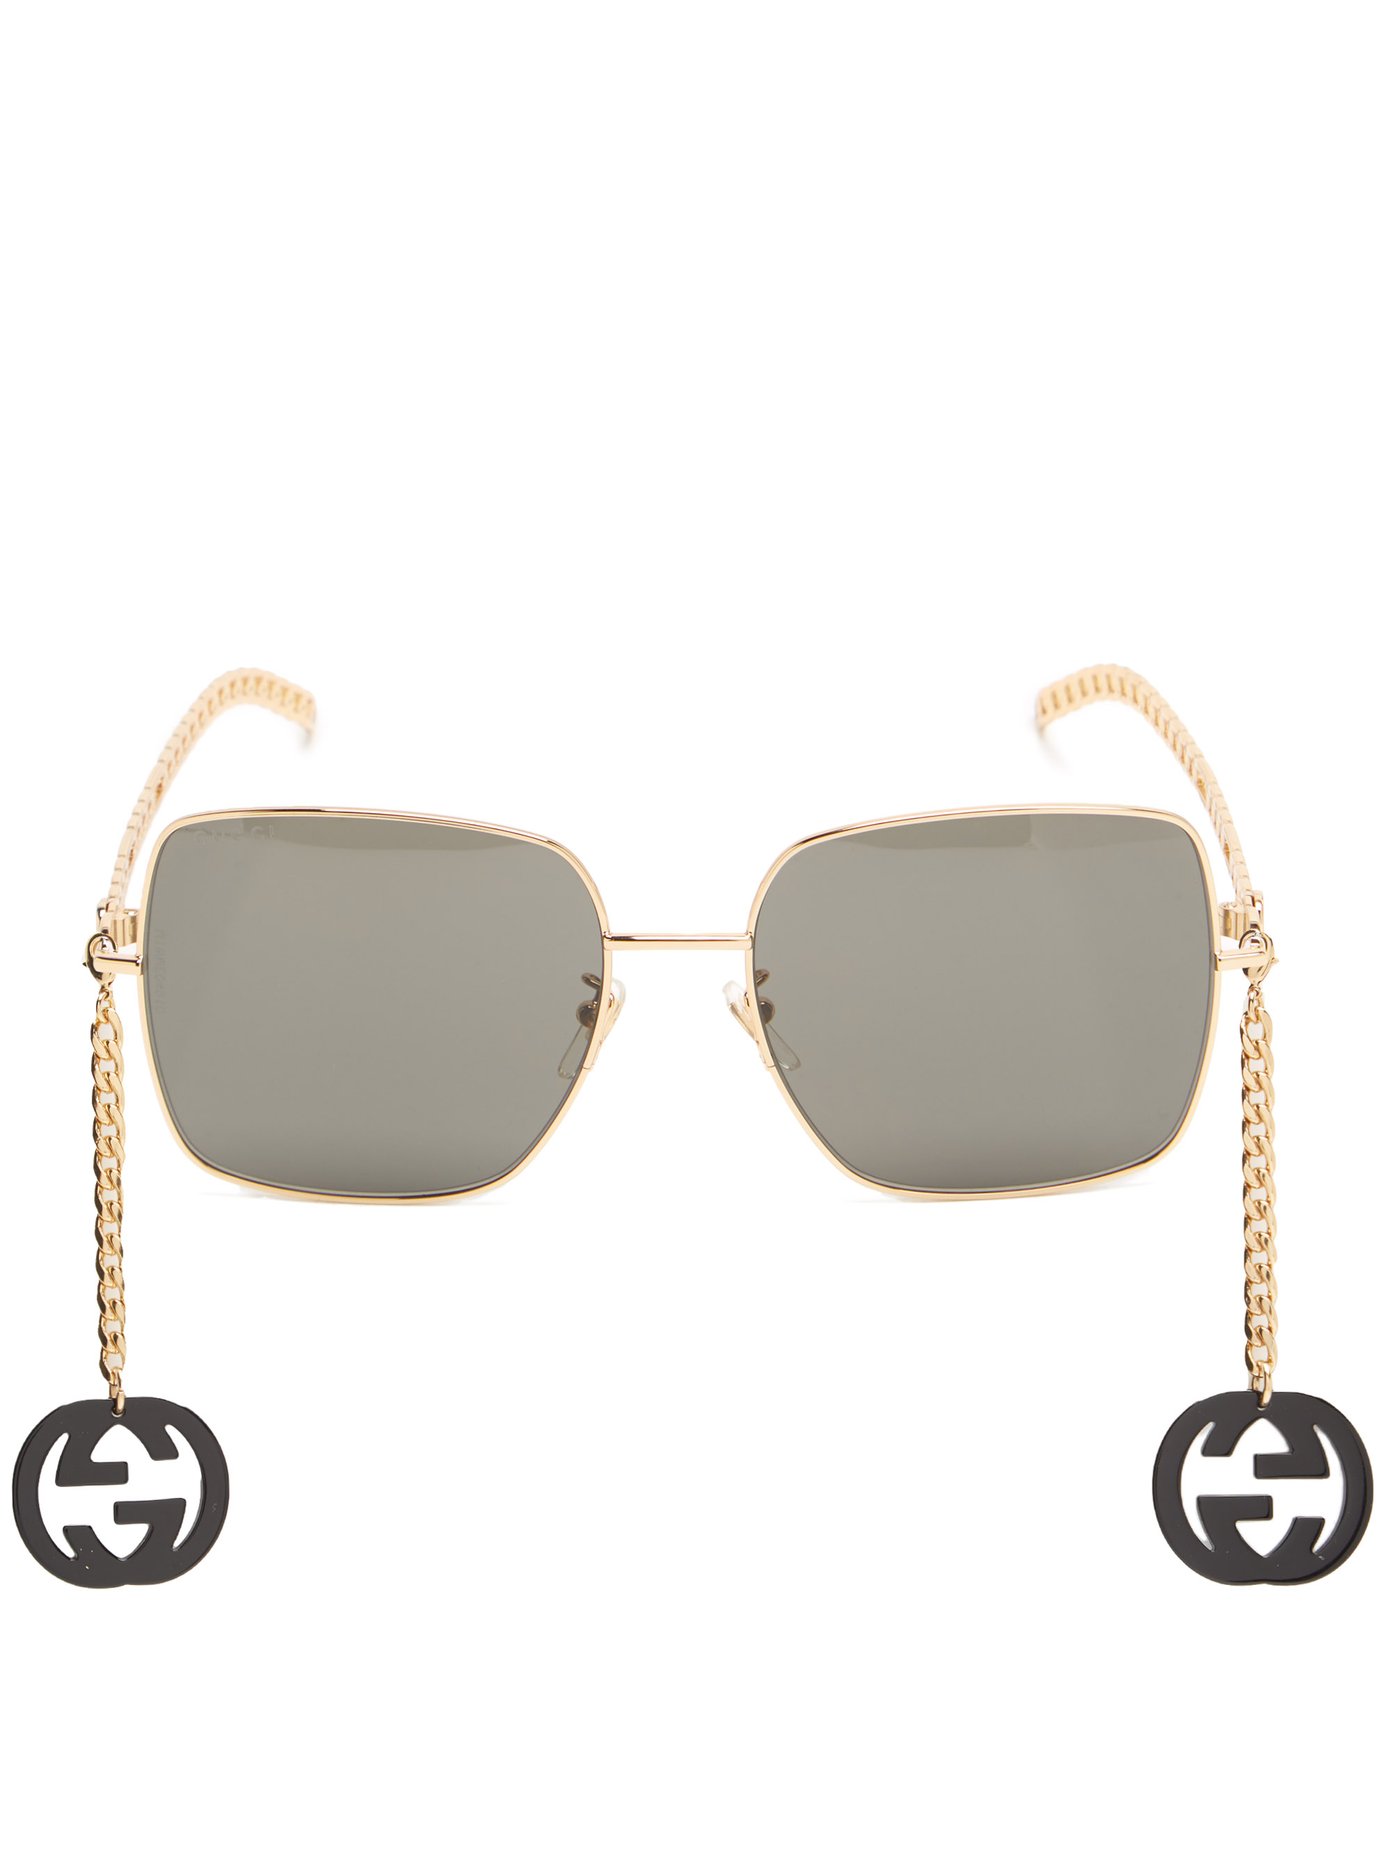 gucci chain sunglasses